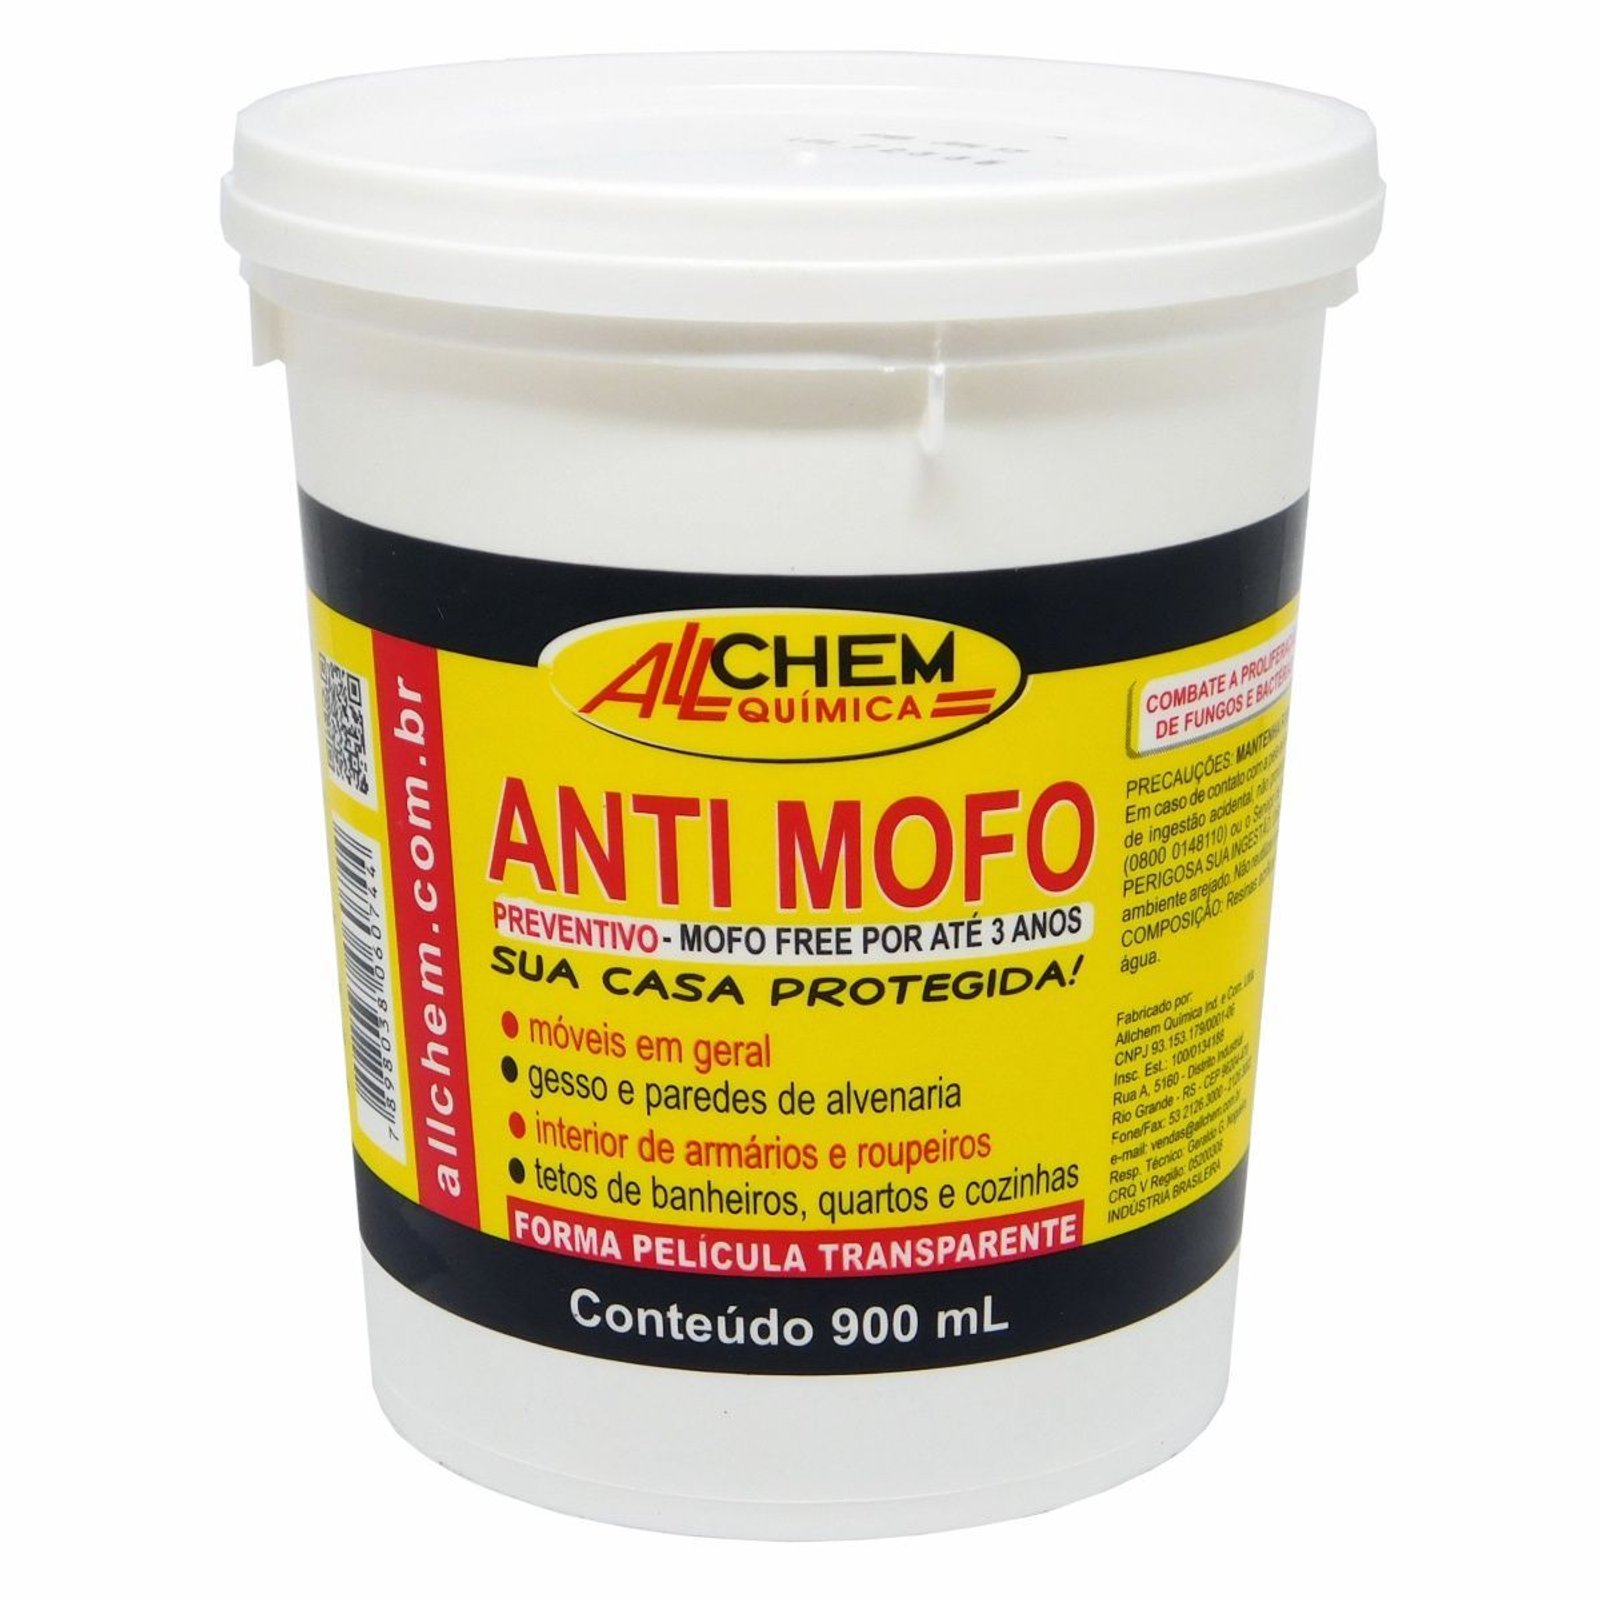 Allchem Anti-Mofo